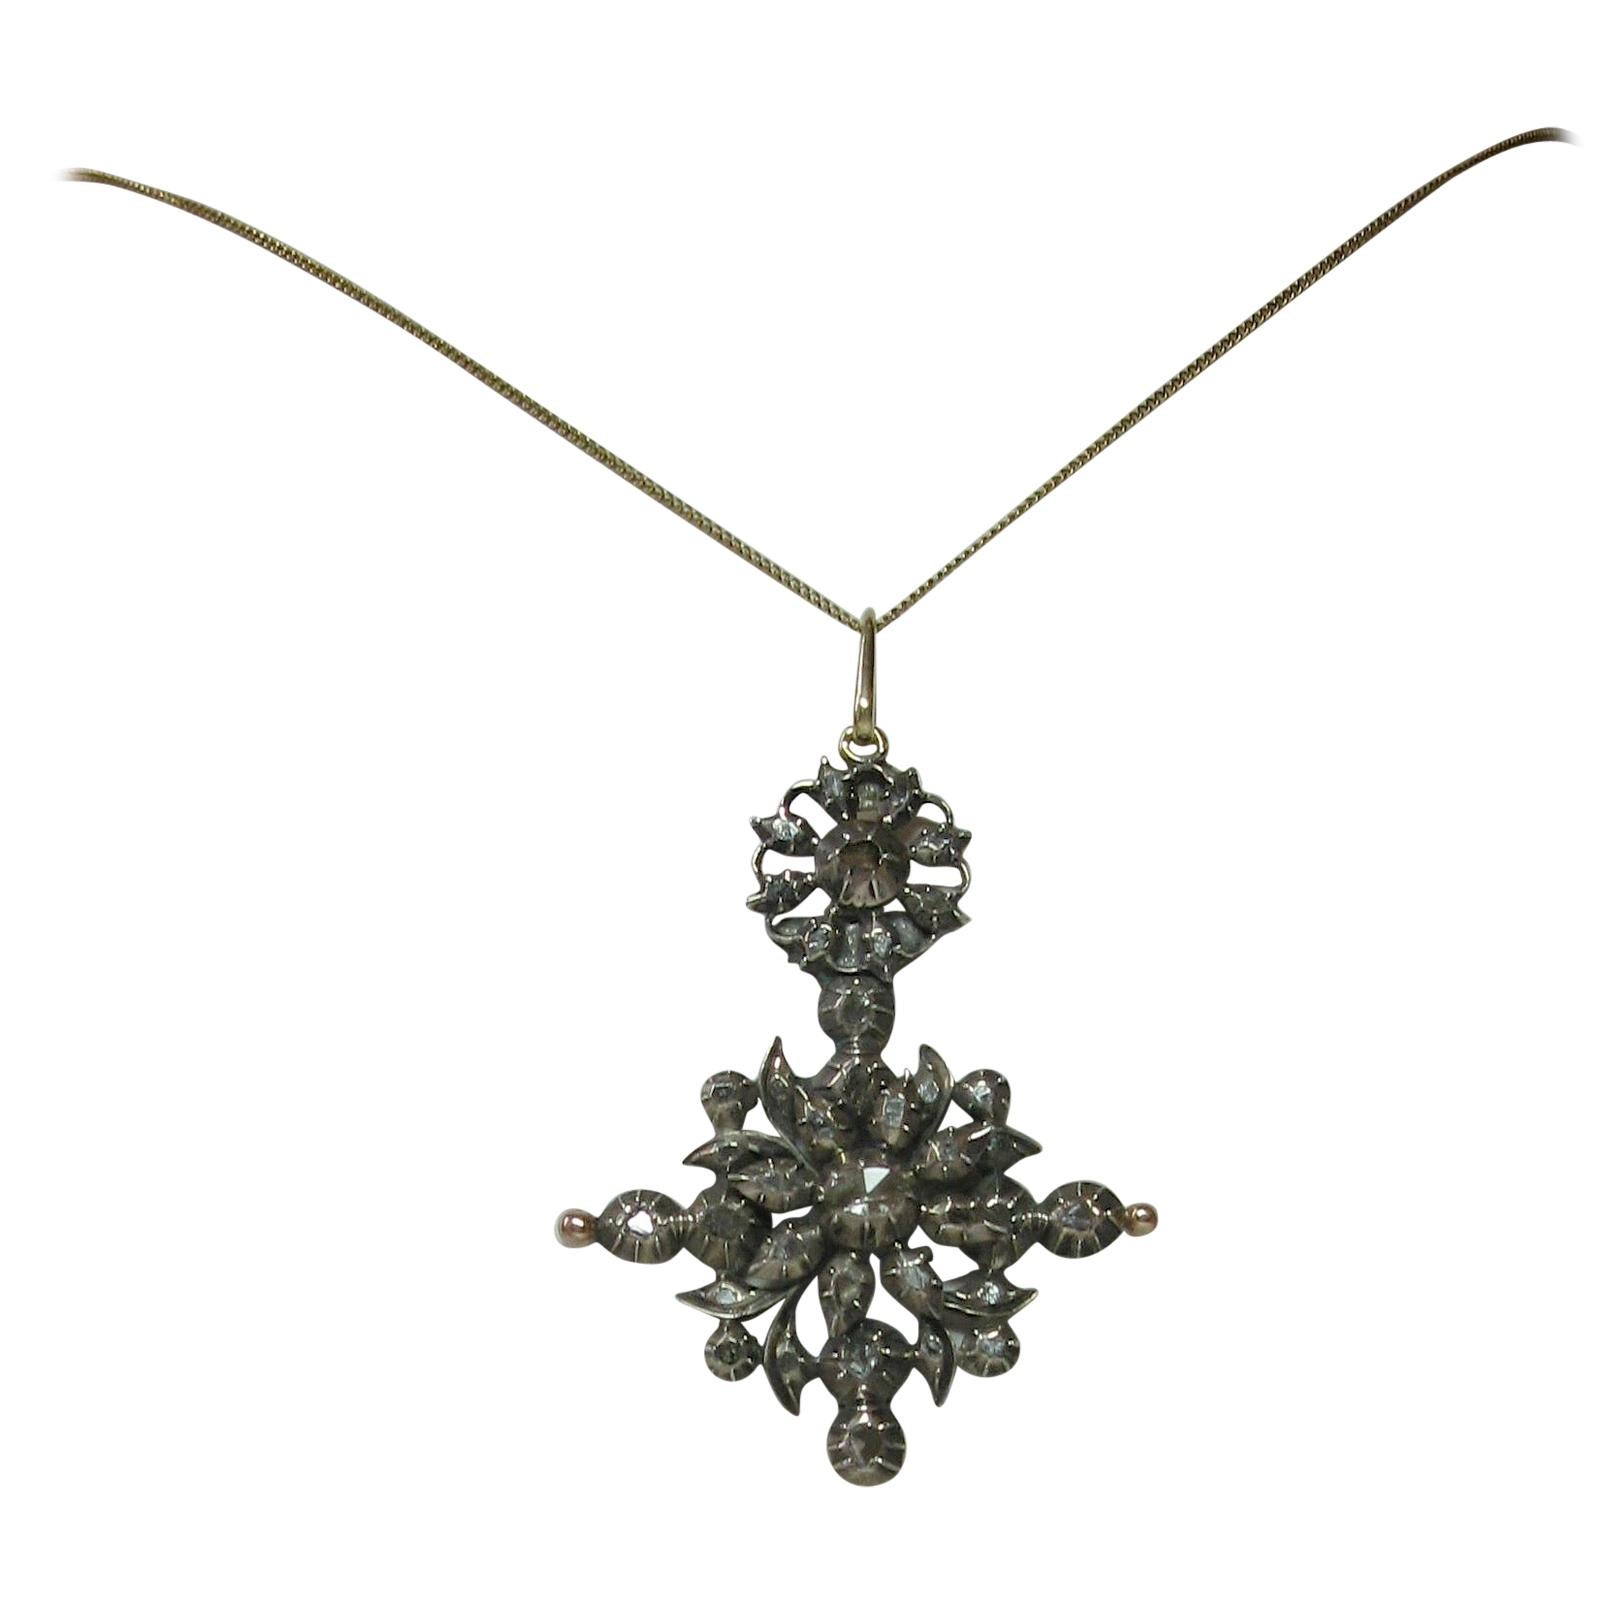 Rare Georgian Rose Cut Diamond Pendant circa 1700 14 Karat Gold Dutch Necklace For Sale